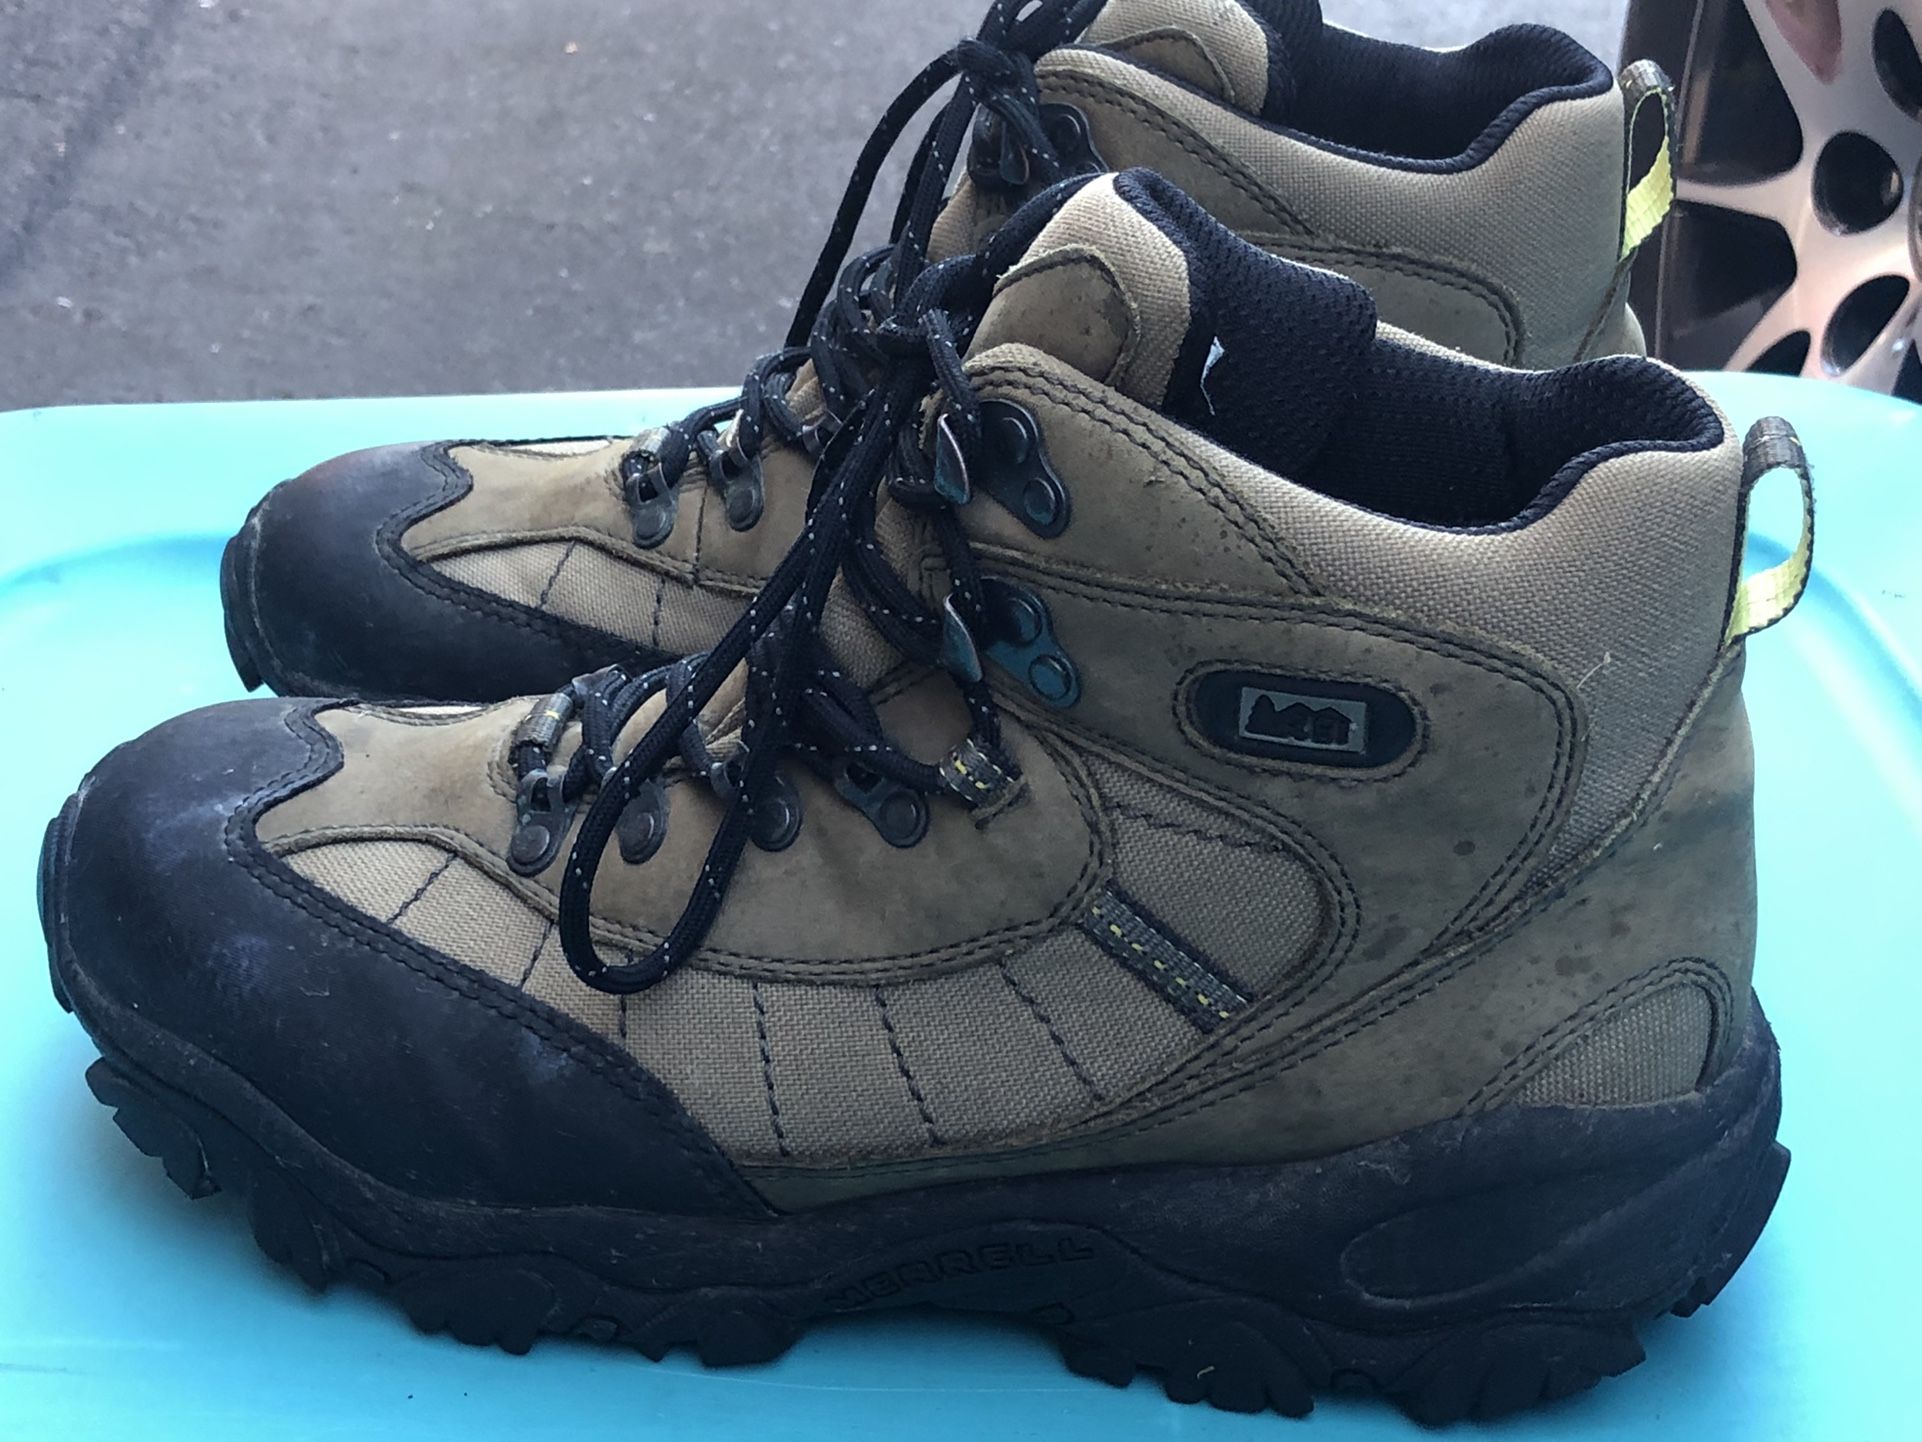 REI Monarch II Lichen Mid By Merrell Mid Waterproof Men’s Hiking Boots Size 10.5